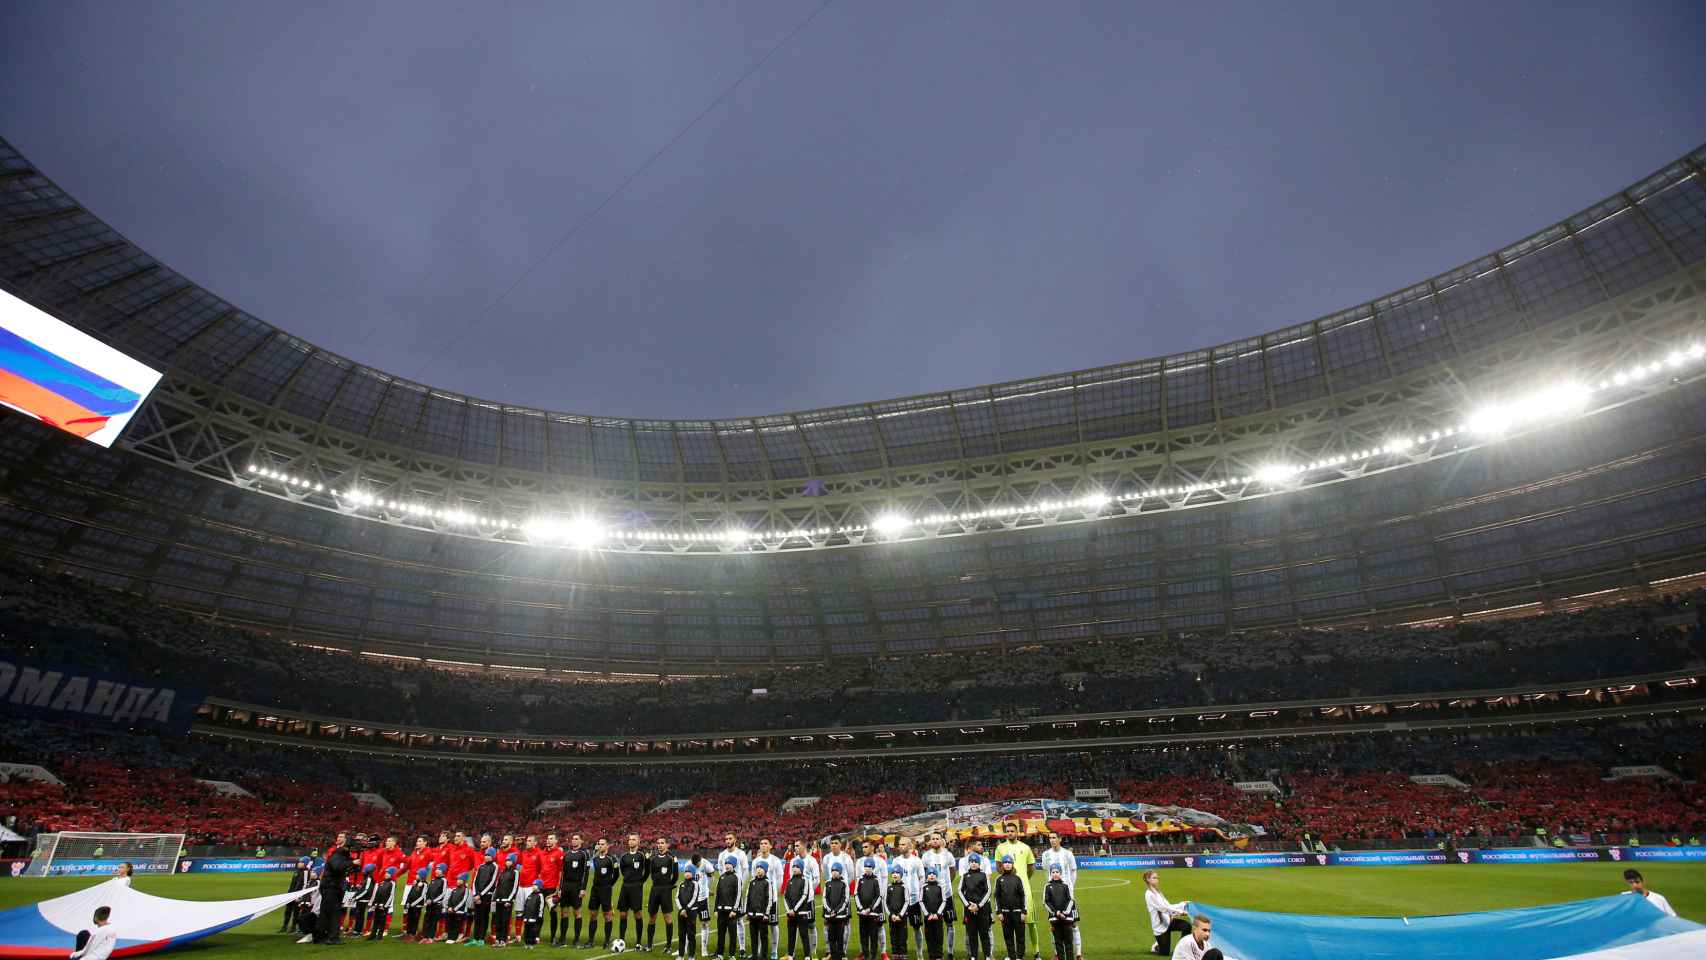 El estadio Luzhniki, lugar de la inauguración y final, durante su reinauguración con el amistoso Rusia - Argentina.